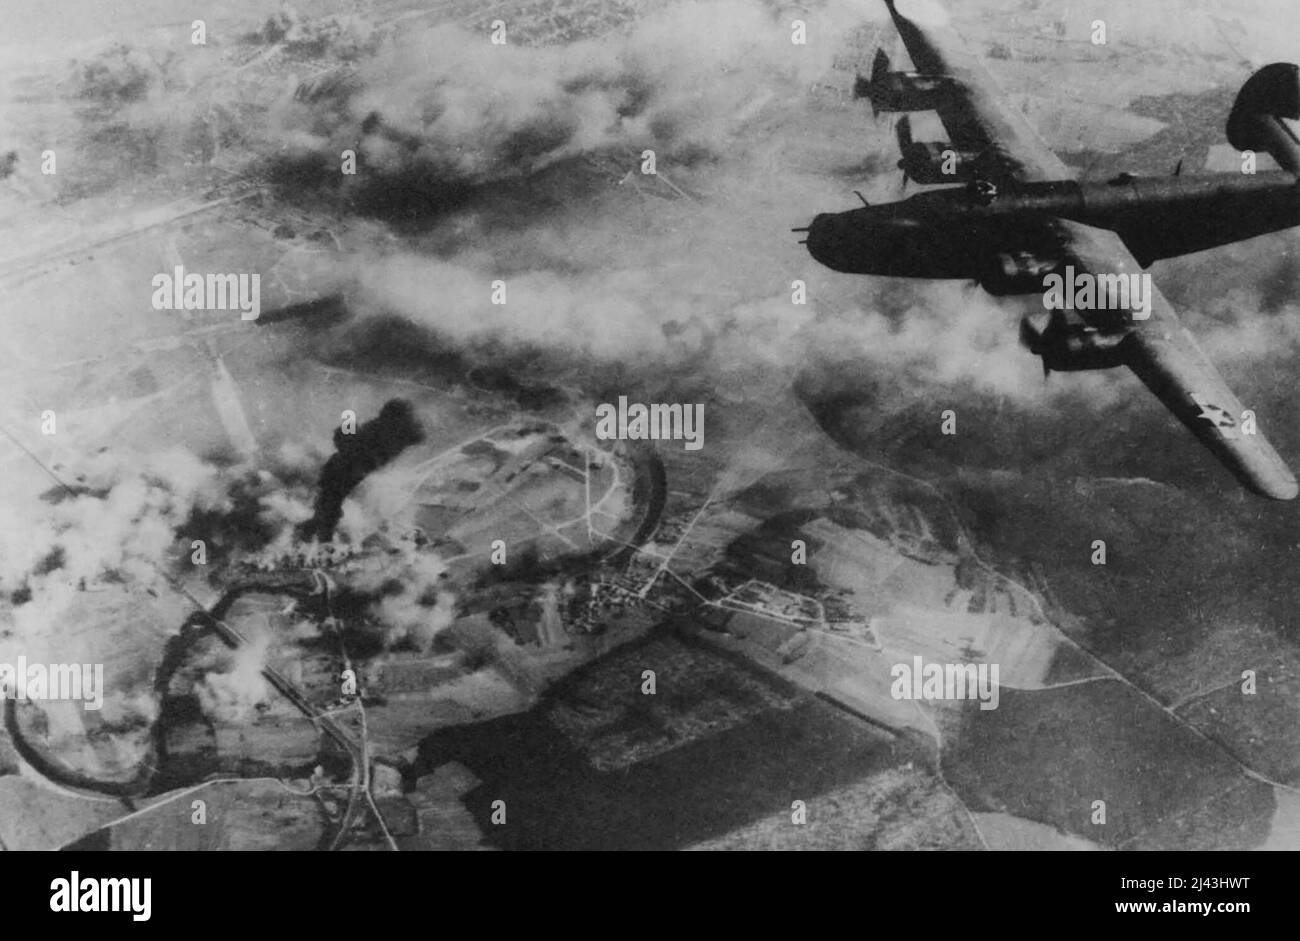 Der Befreier schwingt vom Flugplatz St. Dizier ab -- nach dem Entladen seiner tödlichen Ladung auf die Gebäude am Ende des Feldes. Eine aufragender Pfeiler aus schwarzem Rauch markiert das Grab eines anderen Nazi-Flugplatzes. Die B-24 Liberator ist nach ihrer Arbeit steil abgelegen und macht sich auf den Weg nach Hause. Bei diesem Angriff am 24.. März waren die schweren Bomber praktisch nicht entgegengesetzt, und die Bombardierungen erzielten gute Ergebnisse. 14. April 1944. (Foto von einem offiziellen Foto der Vereinigten Staaten). Stockfoto